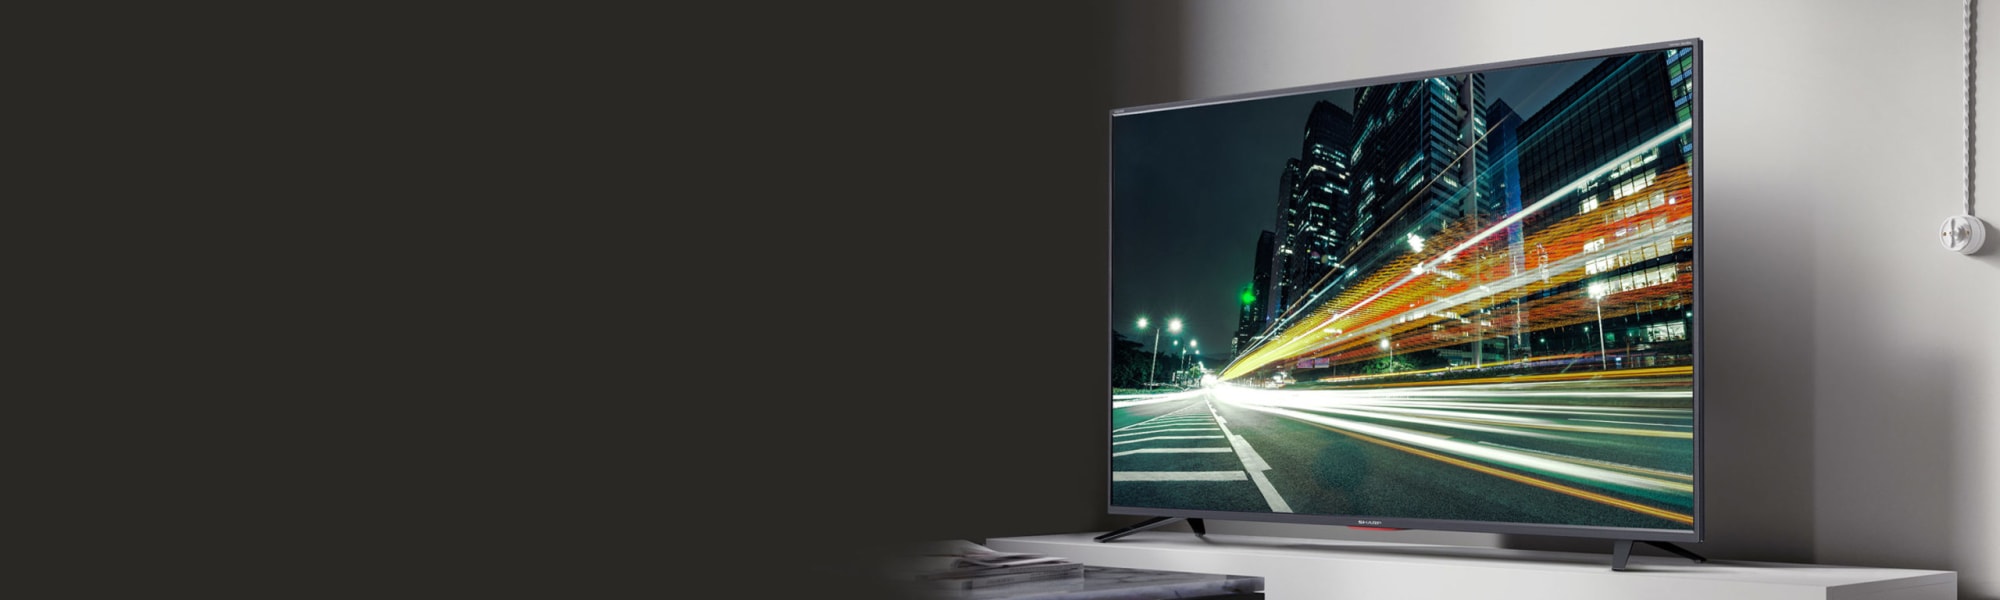 Smart TV\'s 4K UHD - Sharp Europe